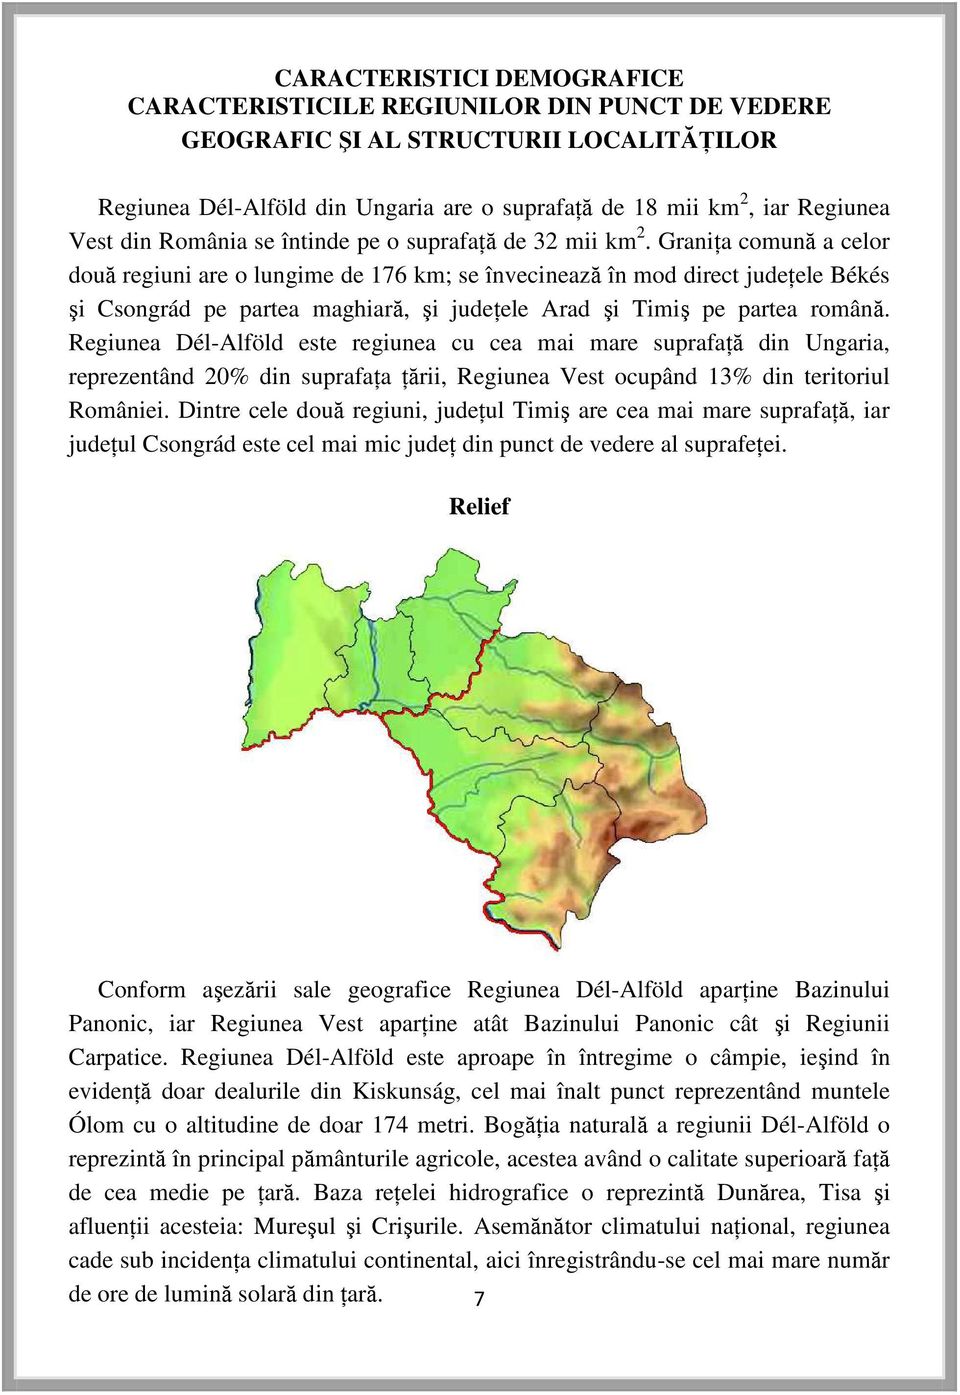 Graniţa comună a celor două regiuni are o lungime de 176 km; se învecinează în mod direct judeţele Békés şi Csongrád pe partea maghiară, şi judeţele Arad şi Timiş pe partea română.